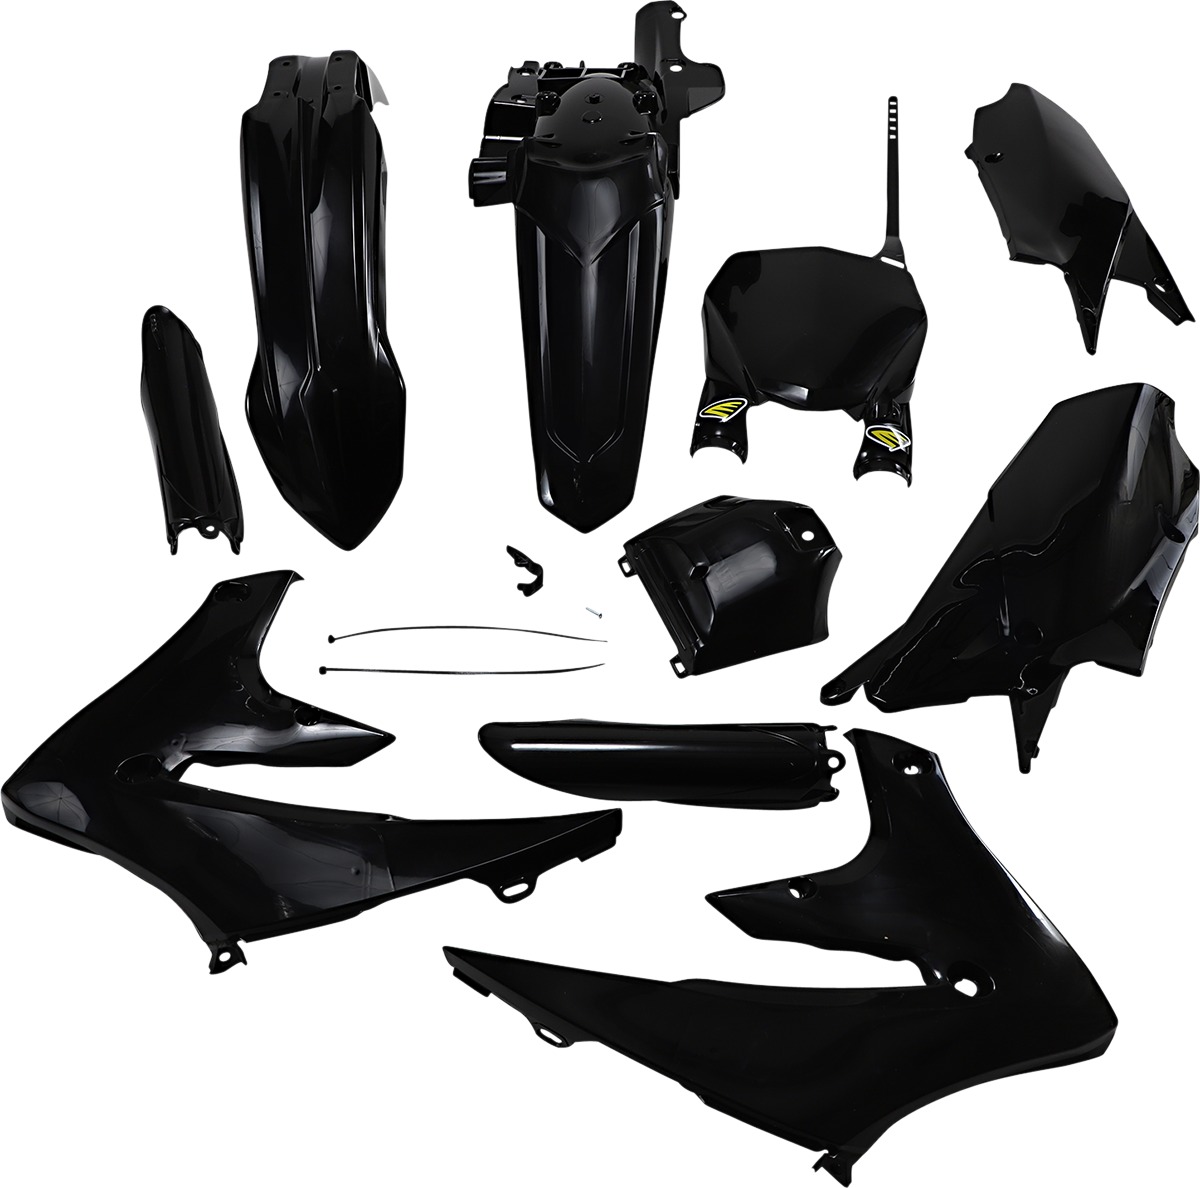 Powerflow Body Kit - Black - For 18-22 YZ450F, 19-23 YZ450FX & YZ250F, 19-23 YZ250F - Click Image to Close